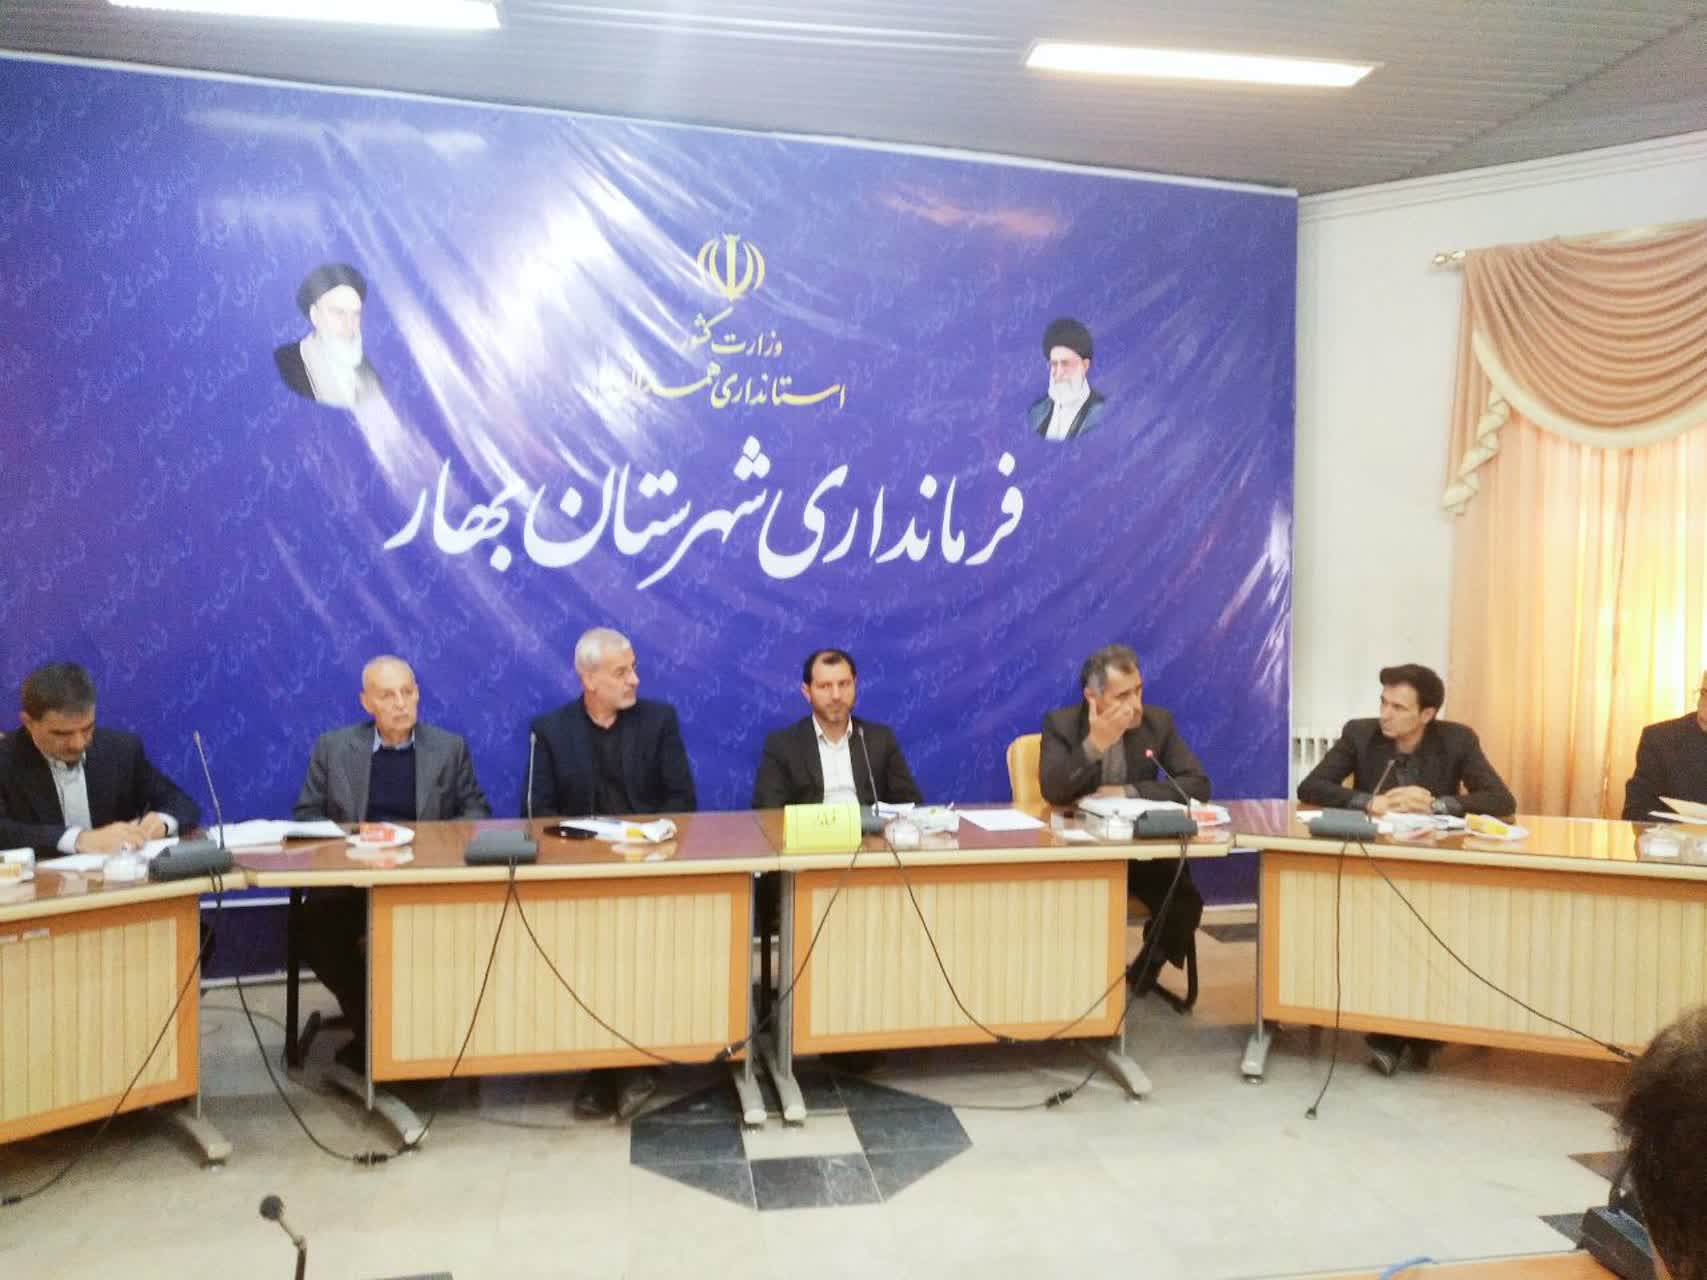 انتخاب پنج نفر از فعالان اقتصادی شهرستان بهار در انتخابات اتاق بازرگانی استان همدان، برای شهرستان بهار سودمند است